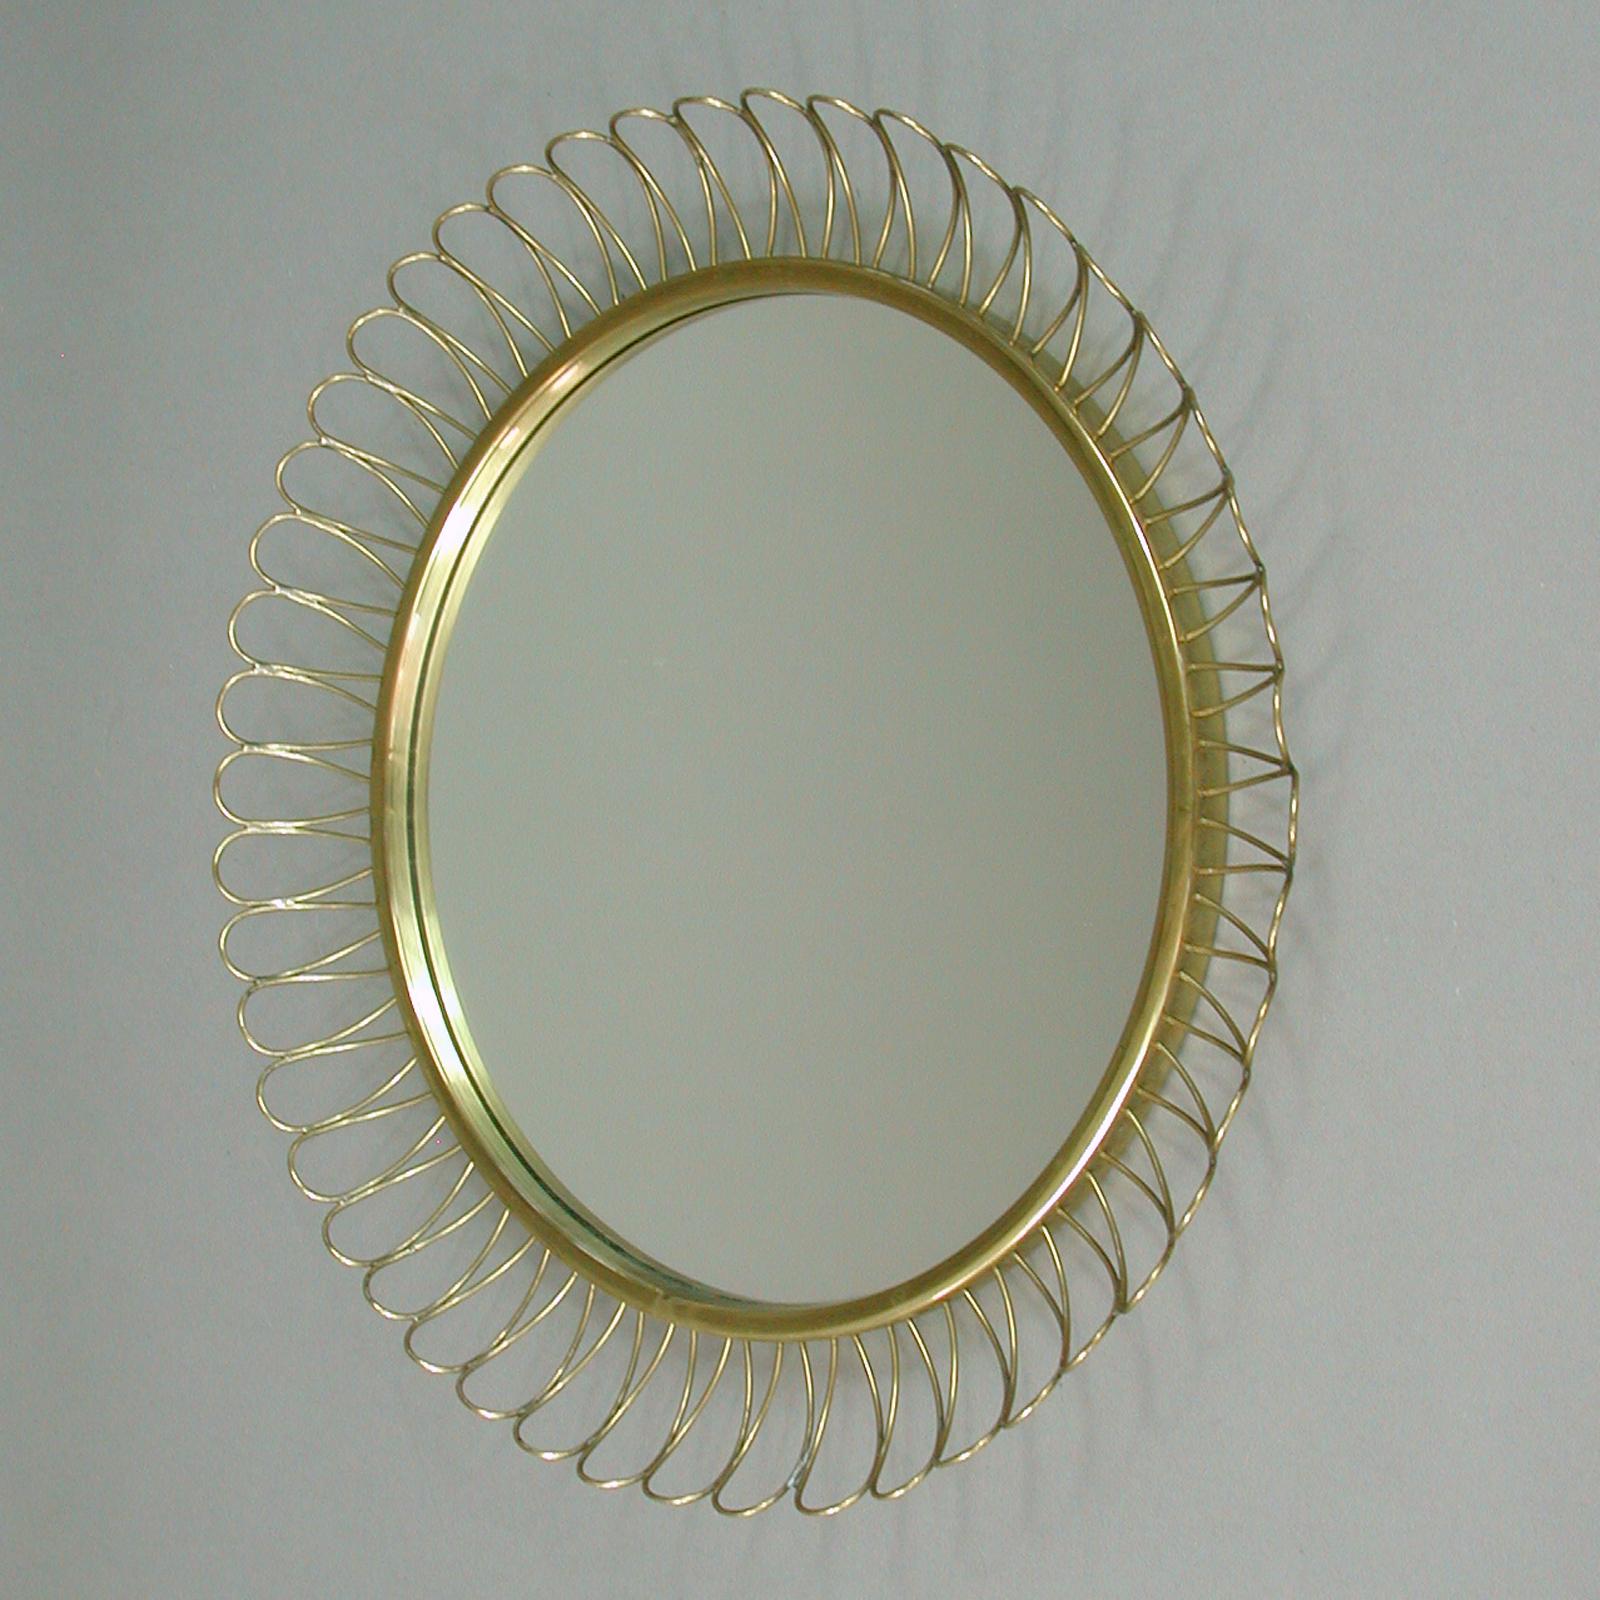 Swedish Midcentury Sculptural Round Brass Wall Mirror, Sweden, 1950s For Sale